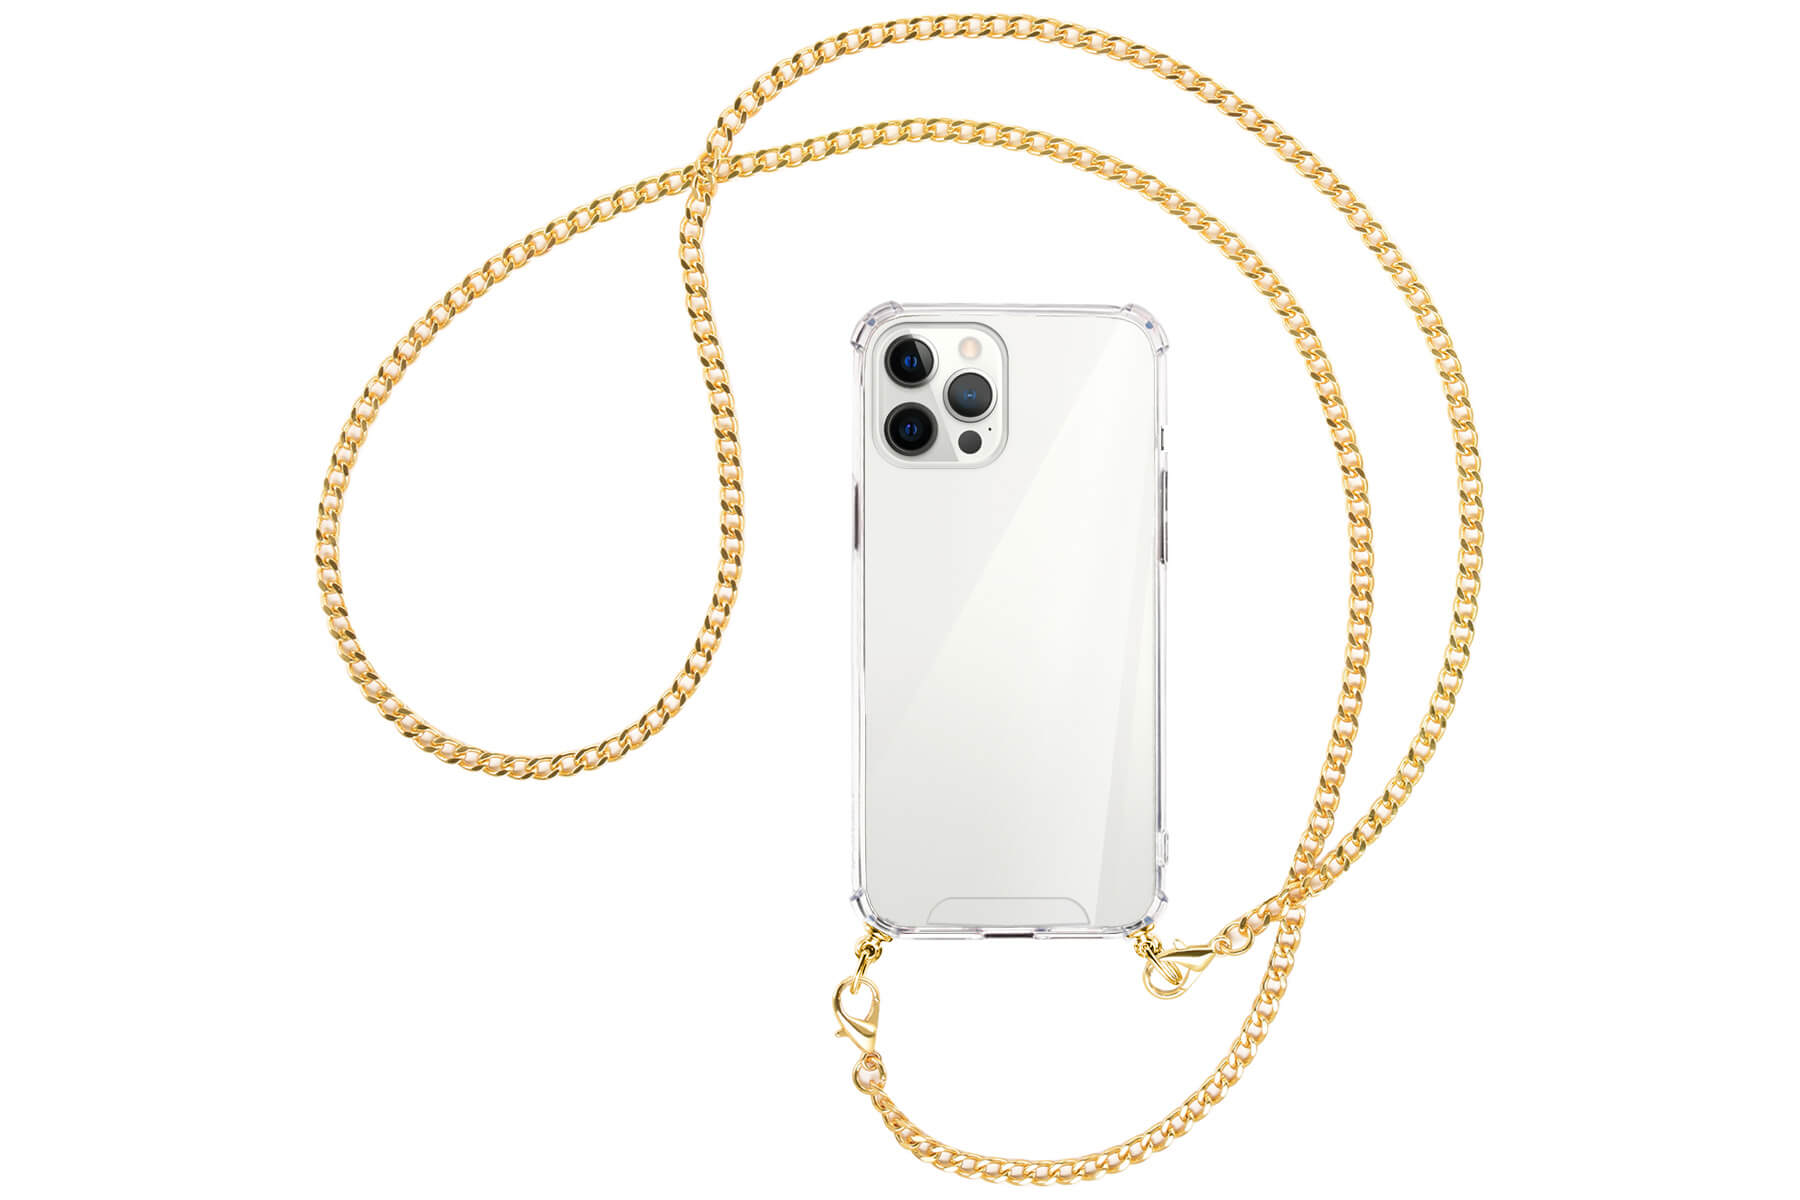 Collier pour iPhone 12 Pro Max - Plus de 60 couleurs!